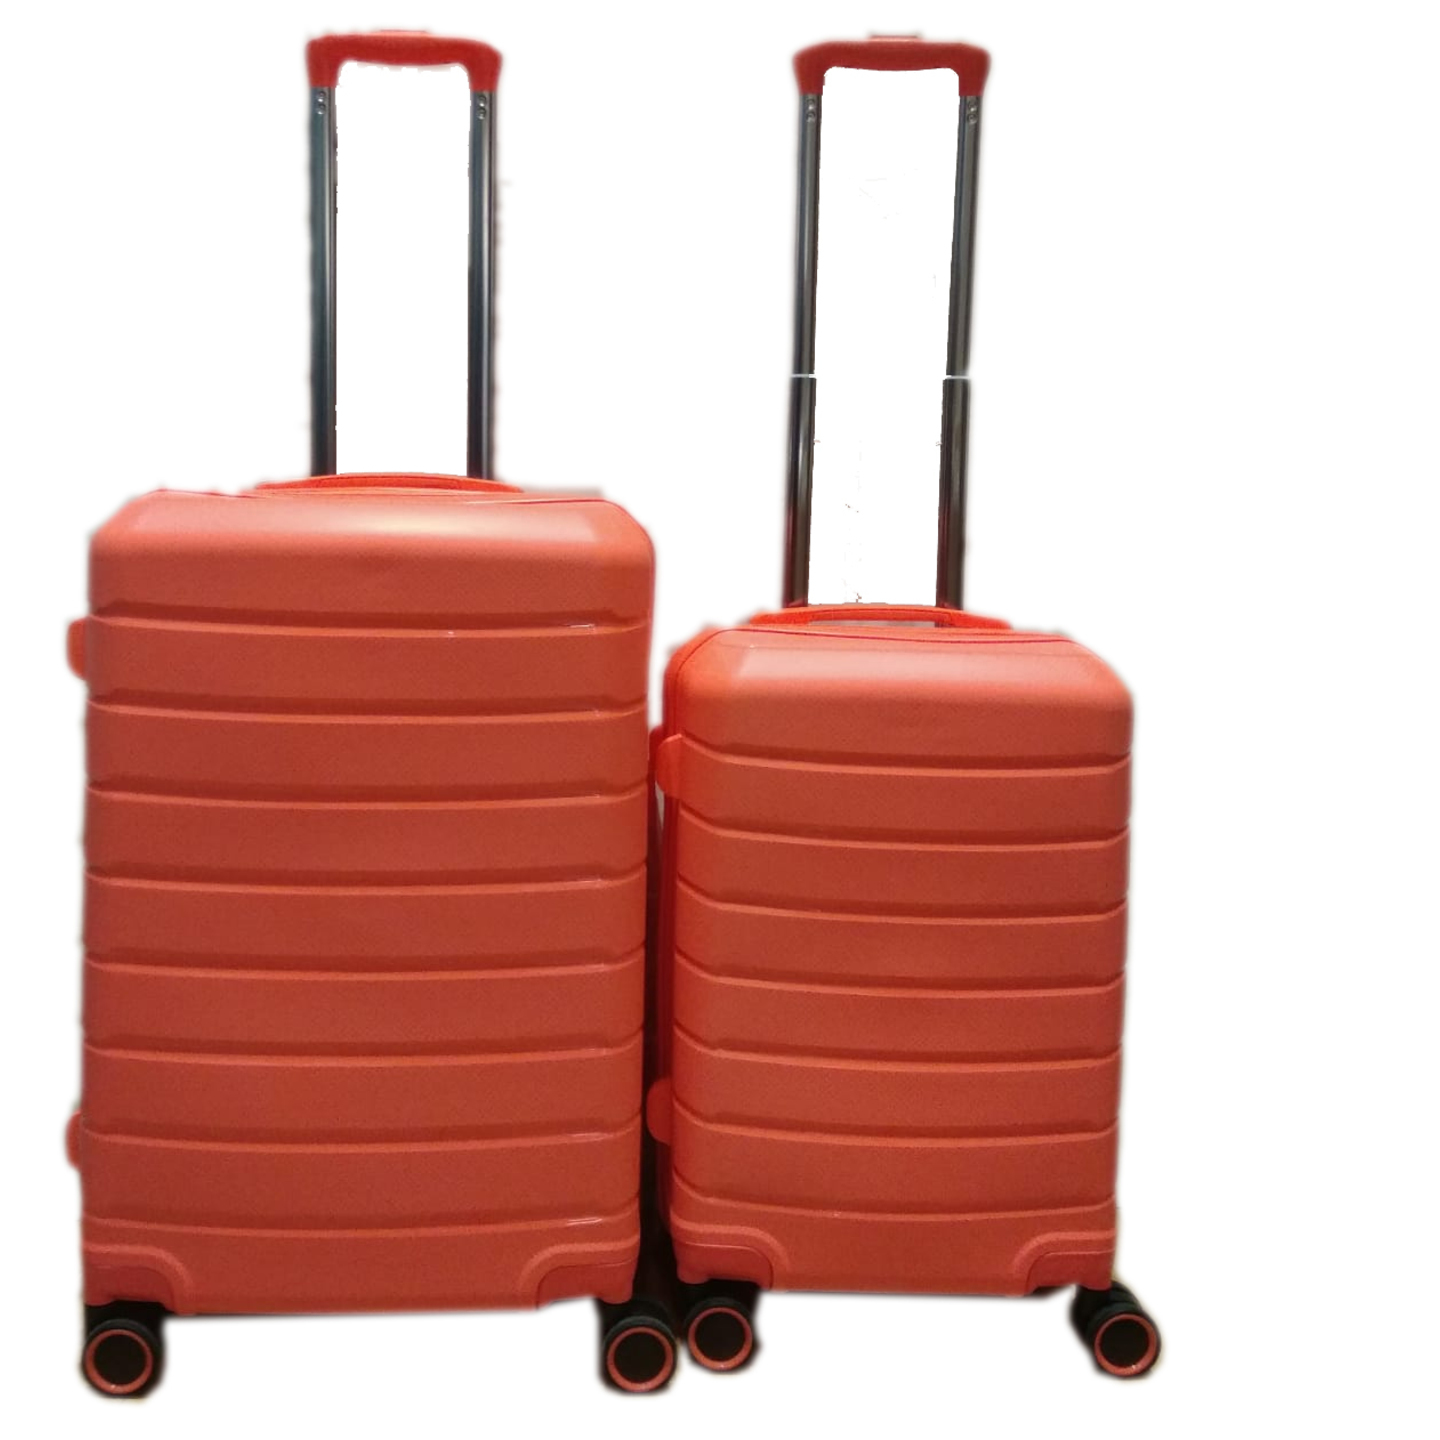 UB-69 Elegant Hard Box Luggage